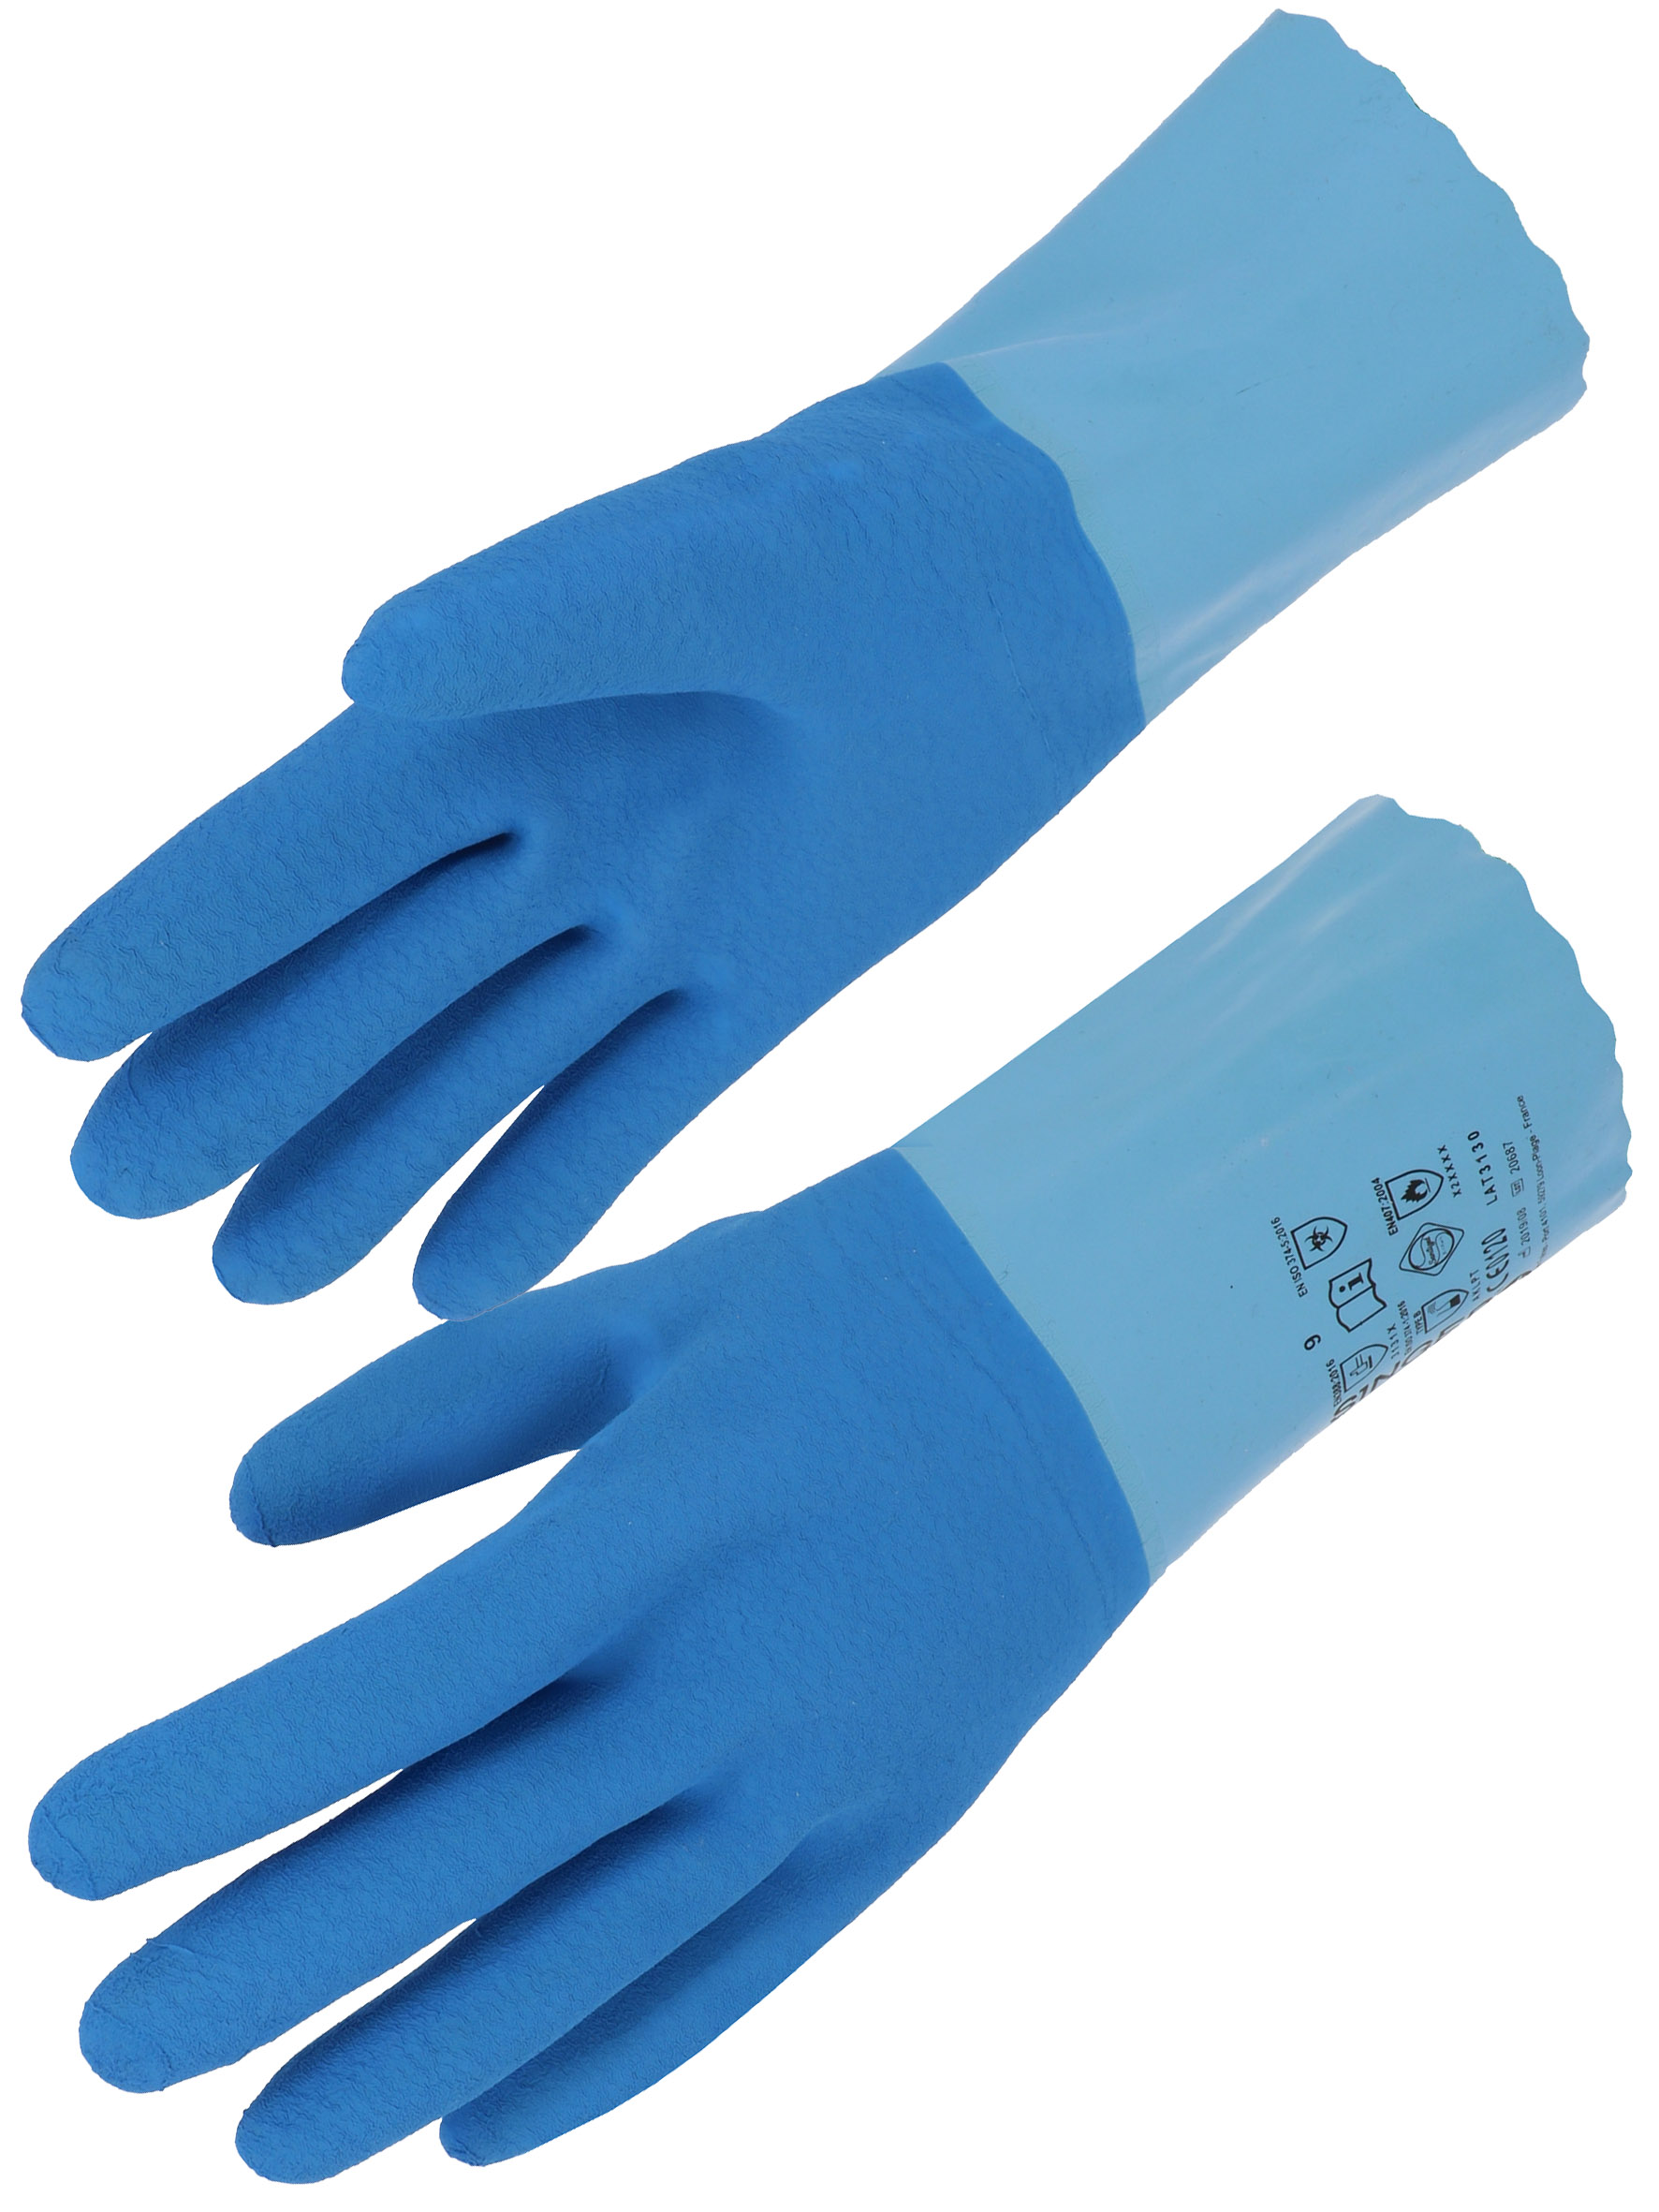 Handschuhe Latex 30cm Chemikalienschutz - voll beschichtet auf Baumwolle korn/blau